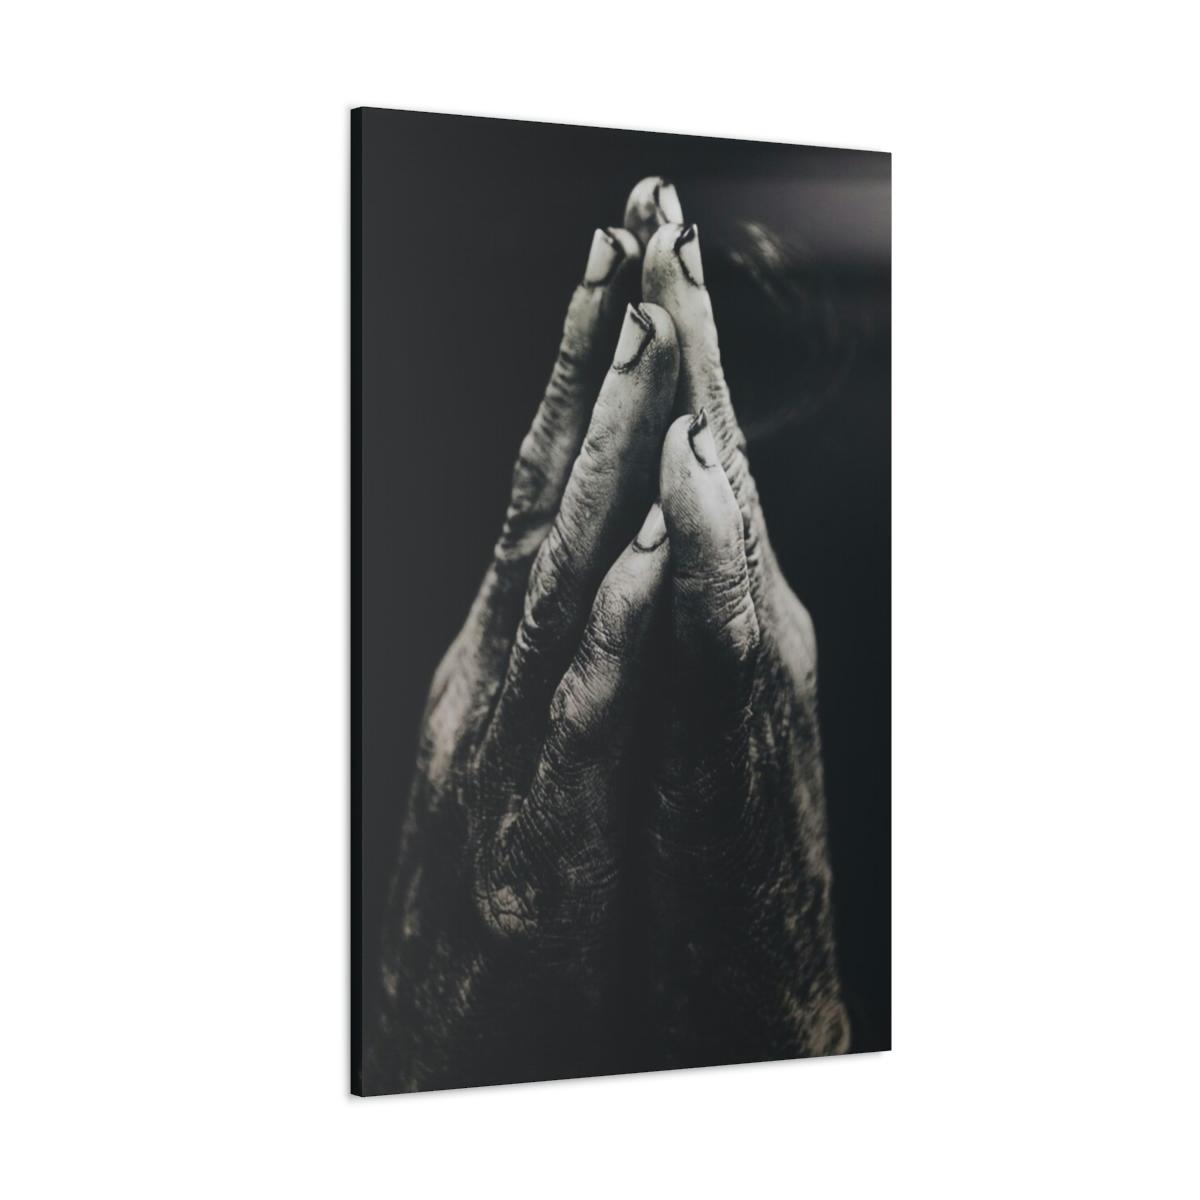 Praying hands image